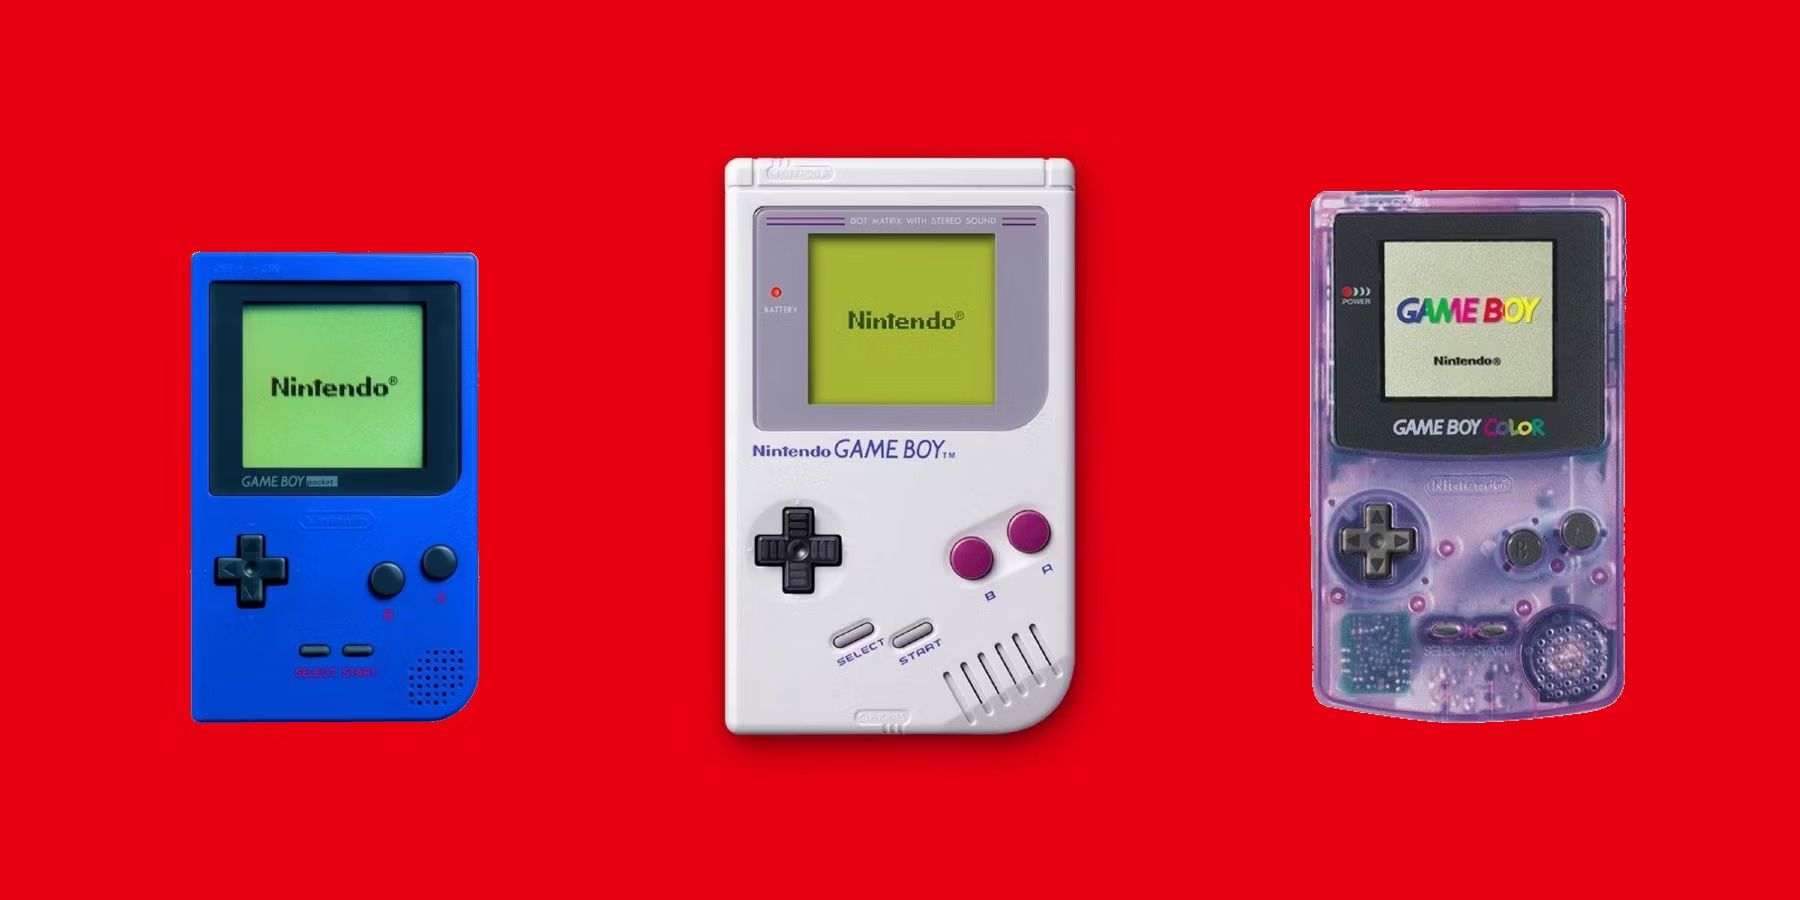 Game Boy Pocket, Game Boy, Game Boy Color